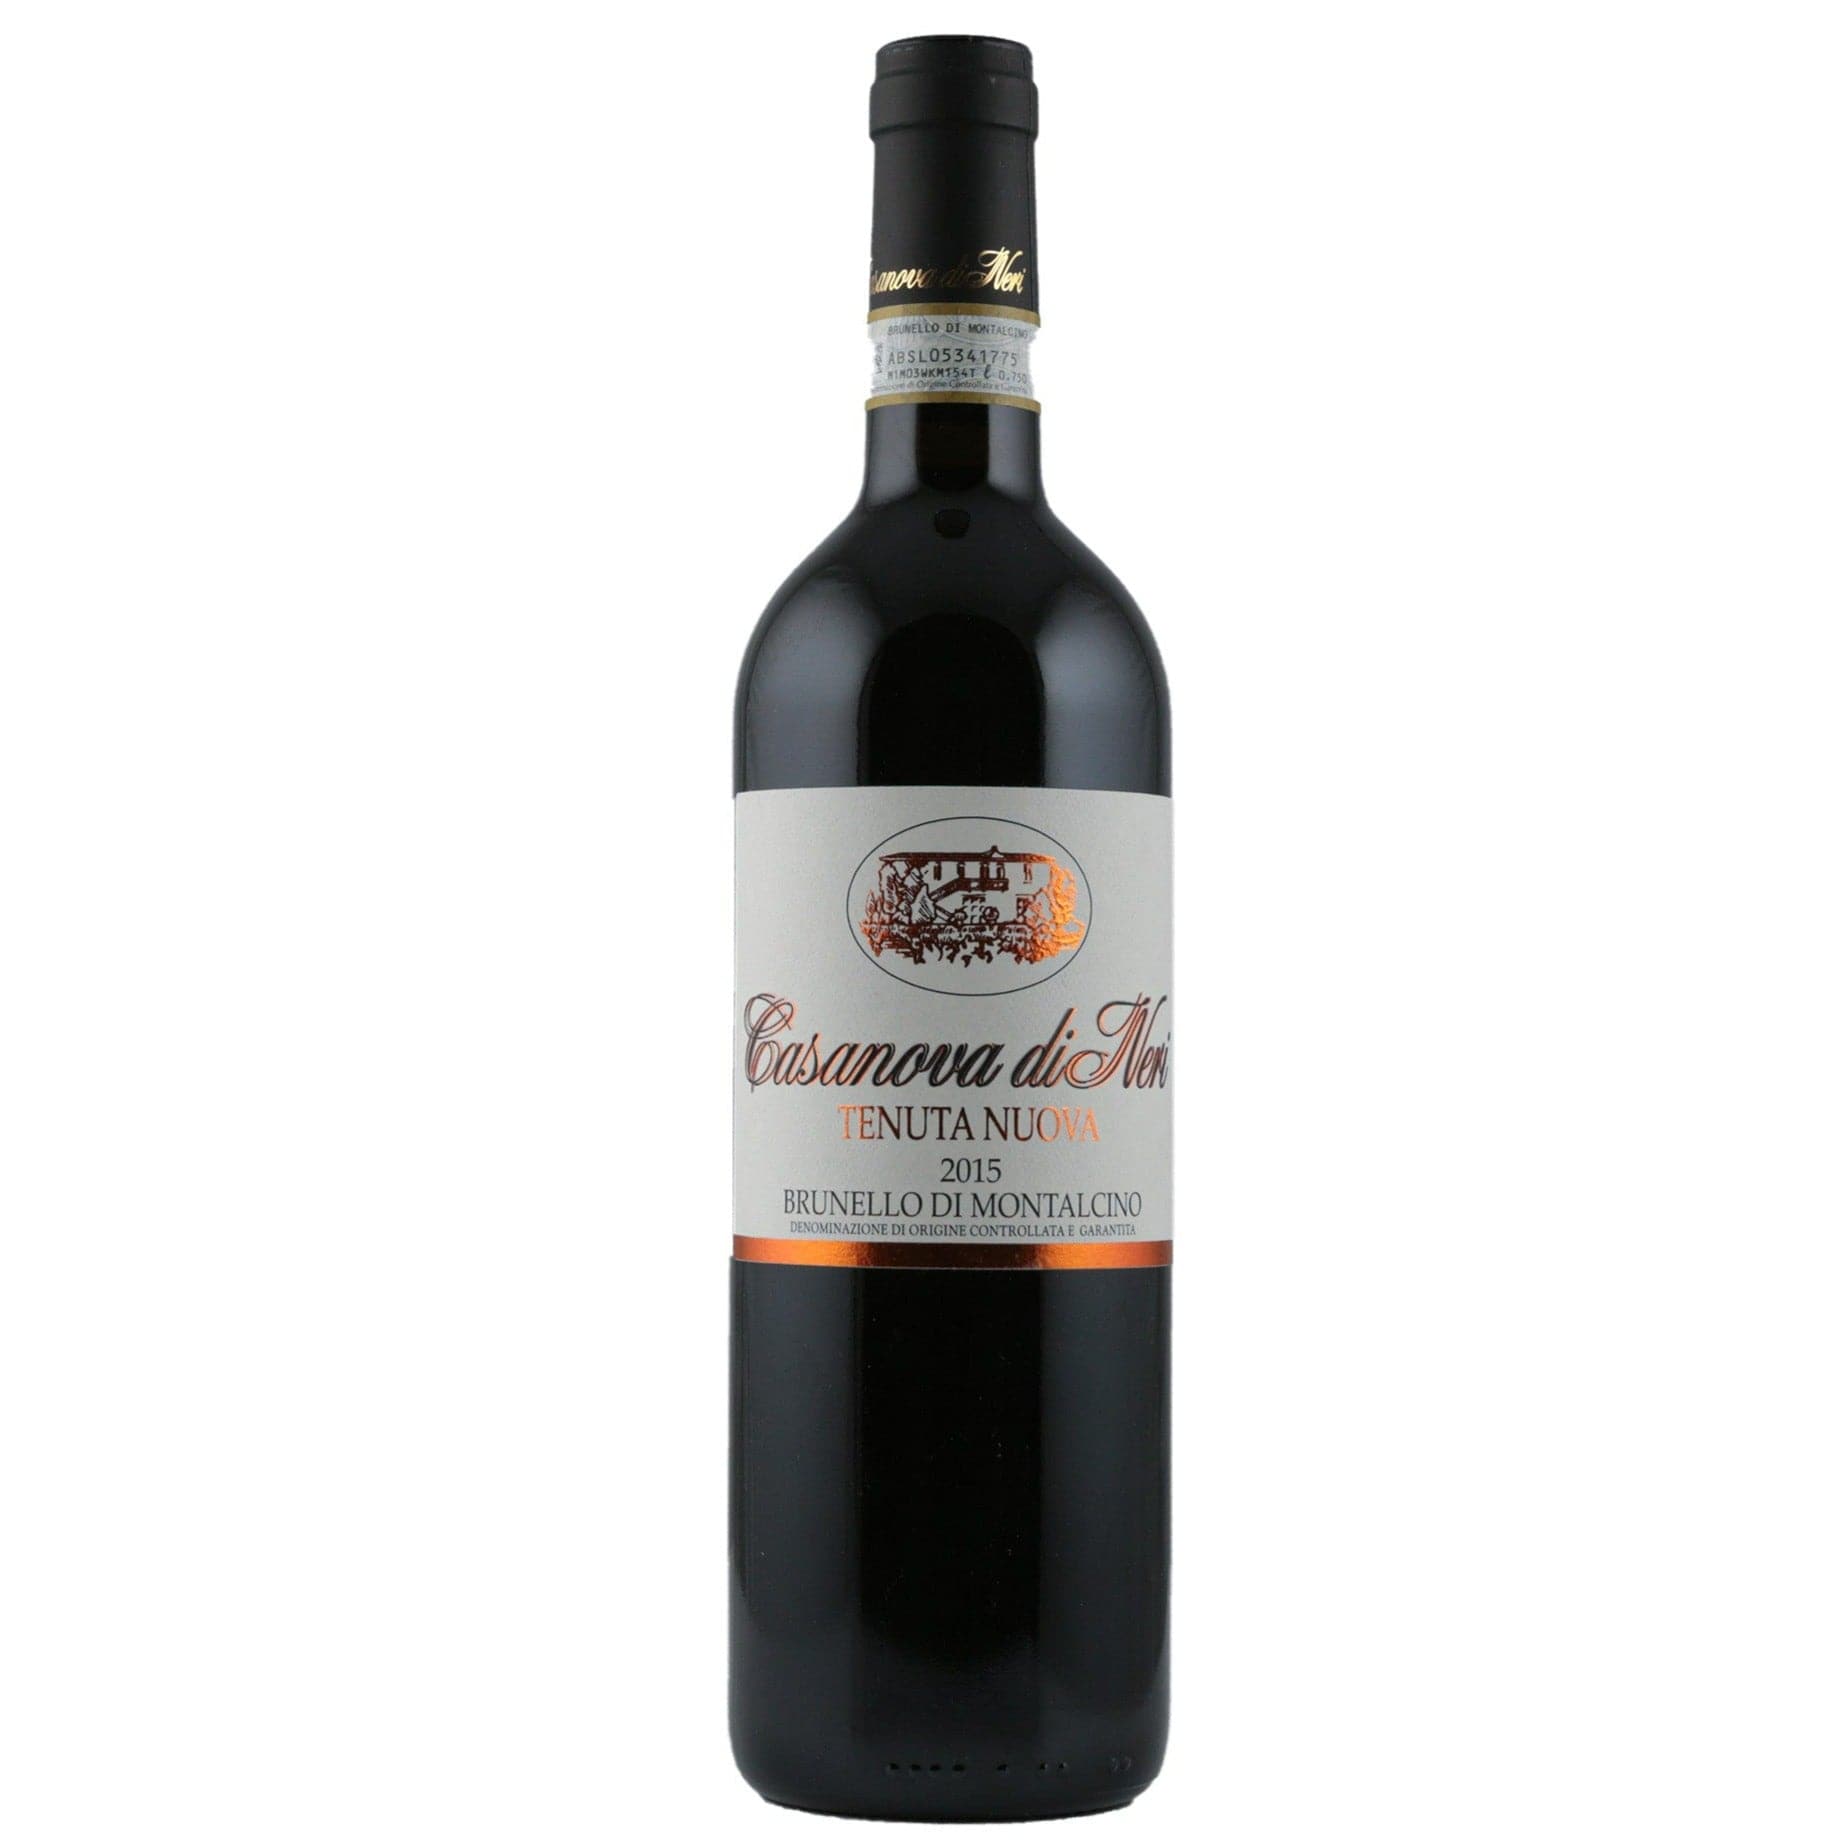 Single bottle of Red wine Casanova di Neri, Tenuta Nuova, Brunello di Montalcino, 2015 100% Sangiovese